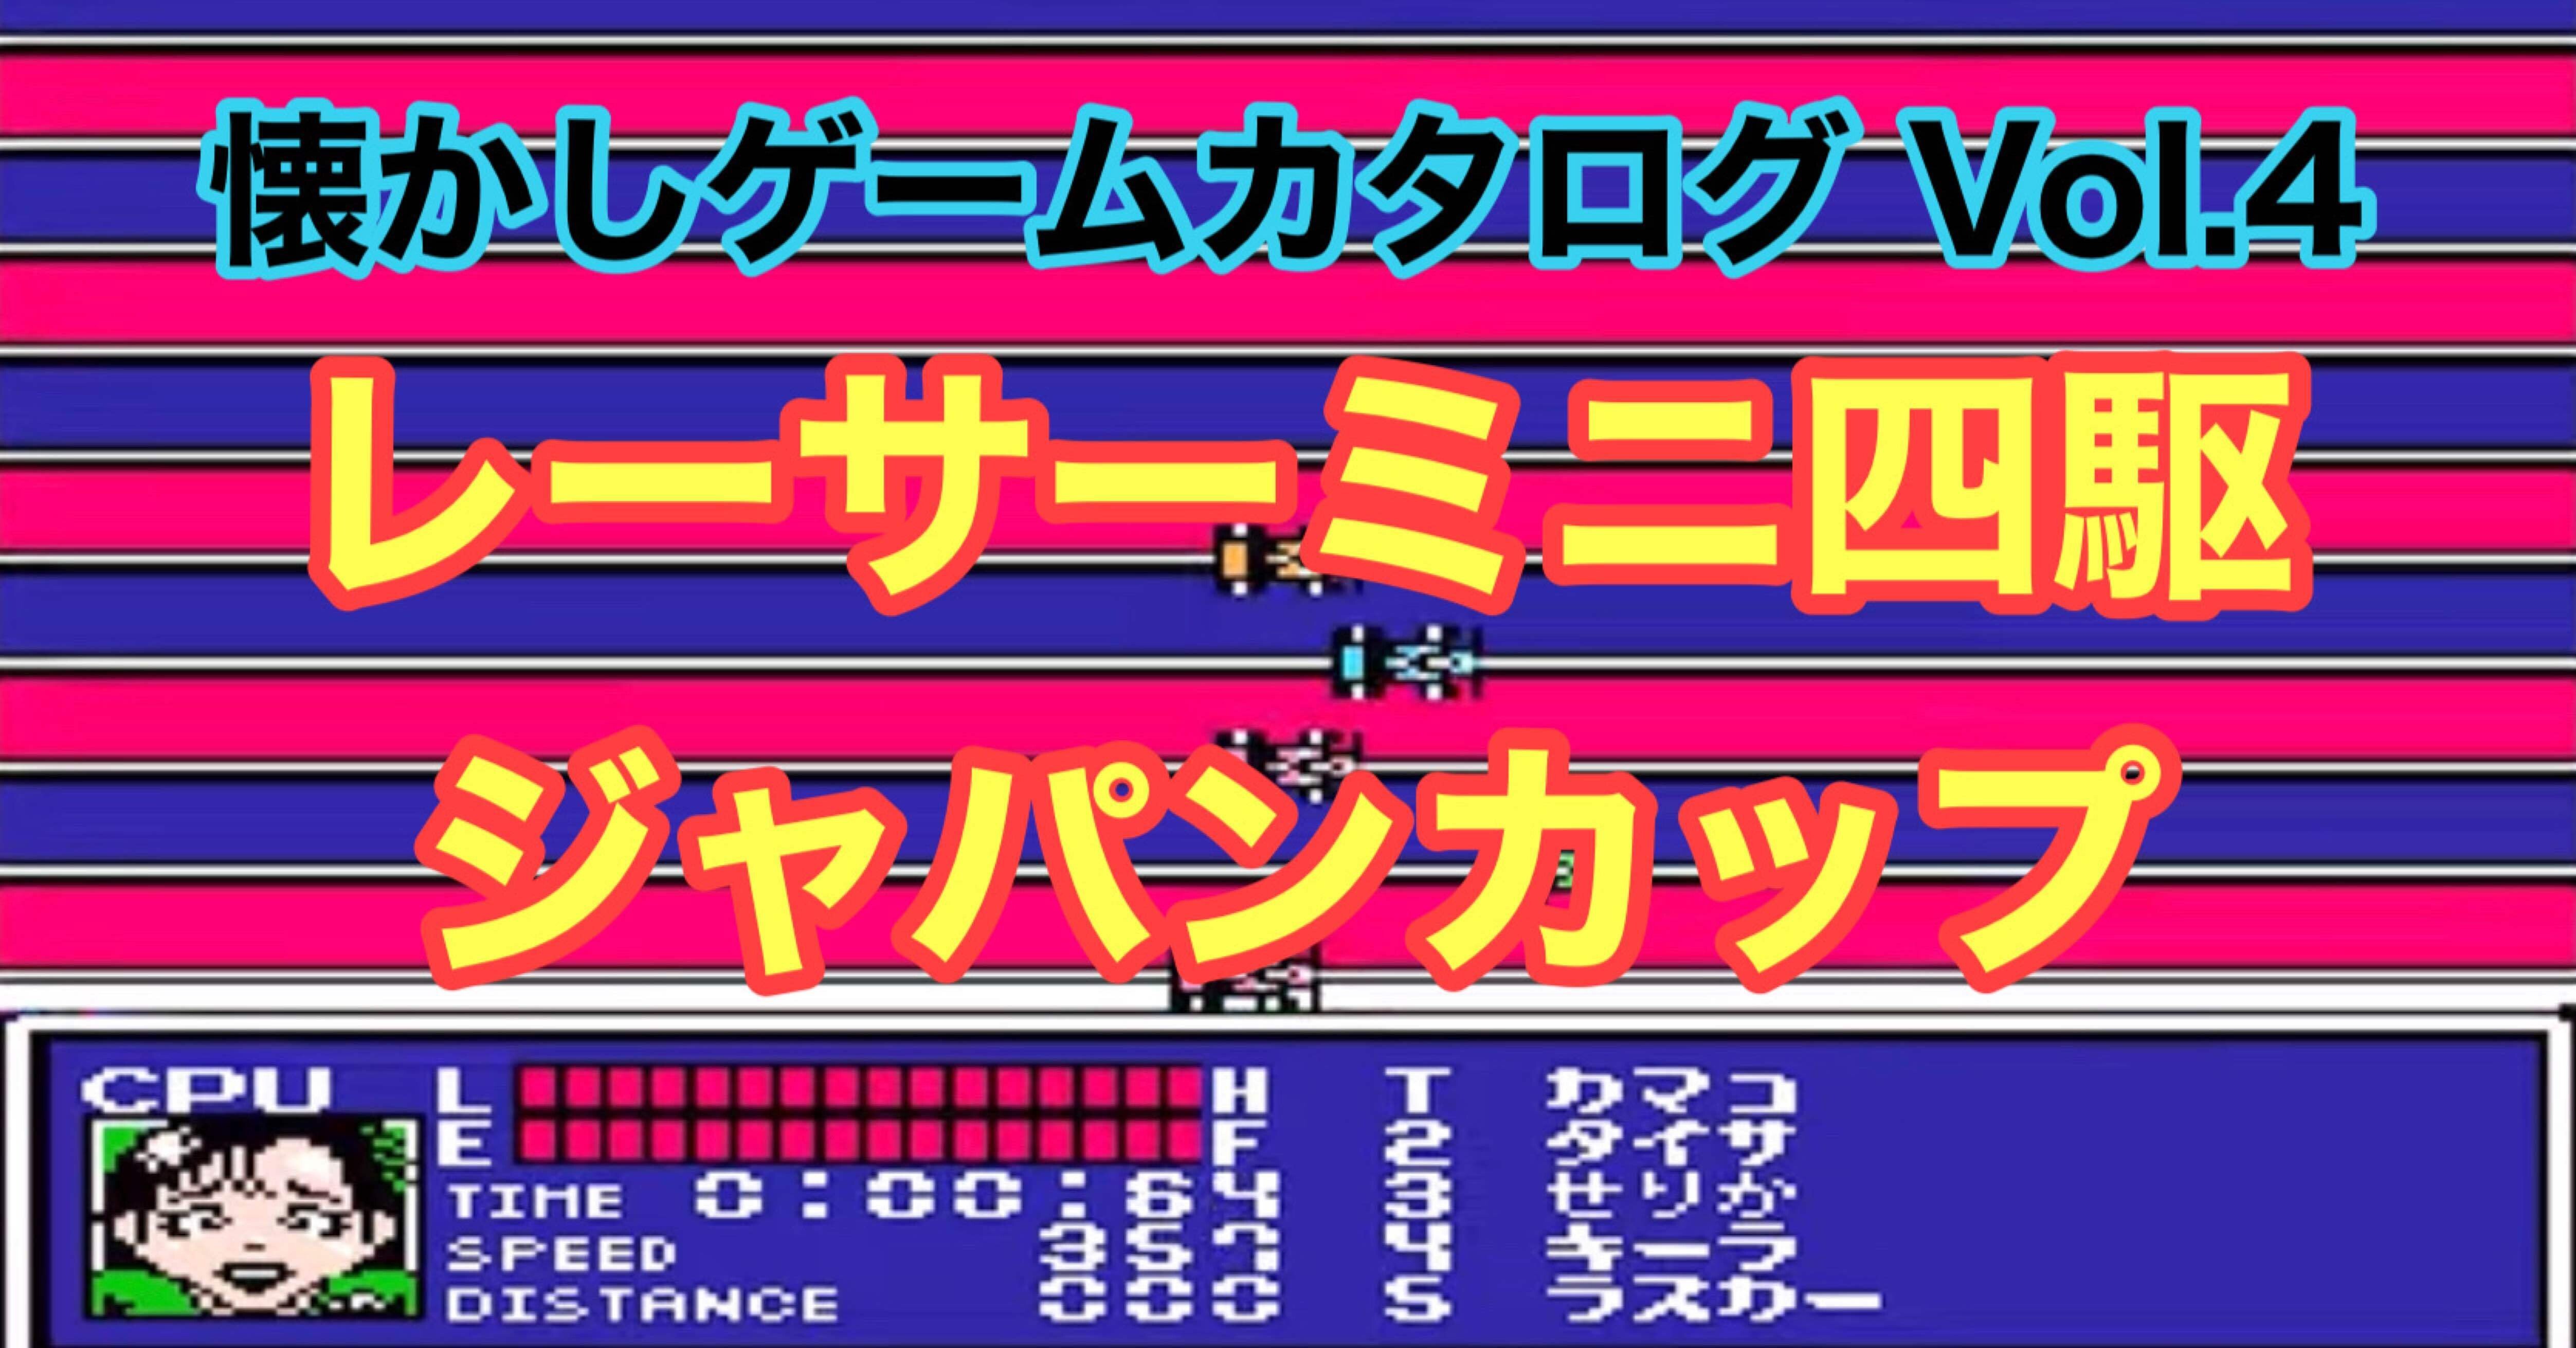 懐かしゲームカタログ Vol 4 レーサーミニ四駆 ジャパンカップ マルショク Note